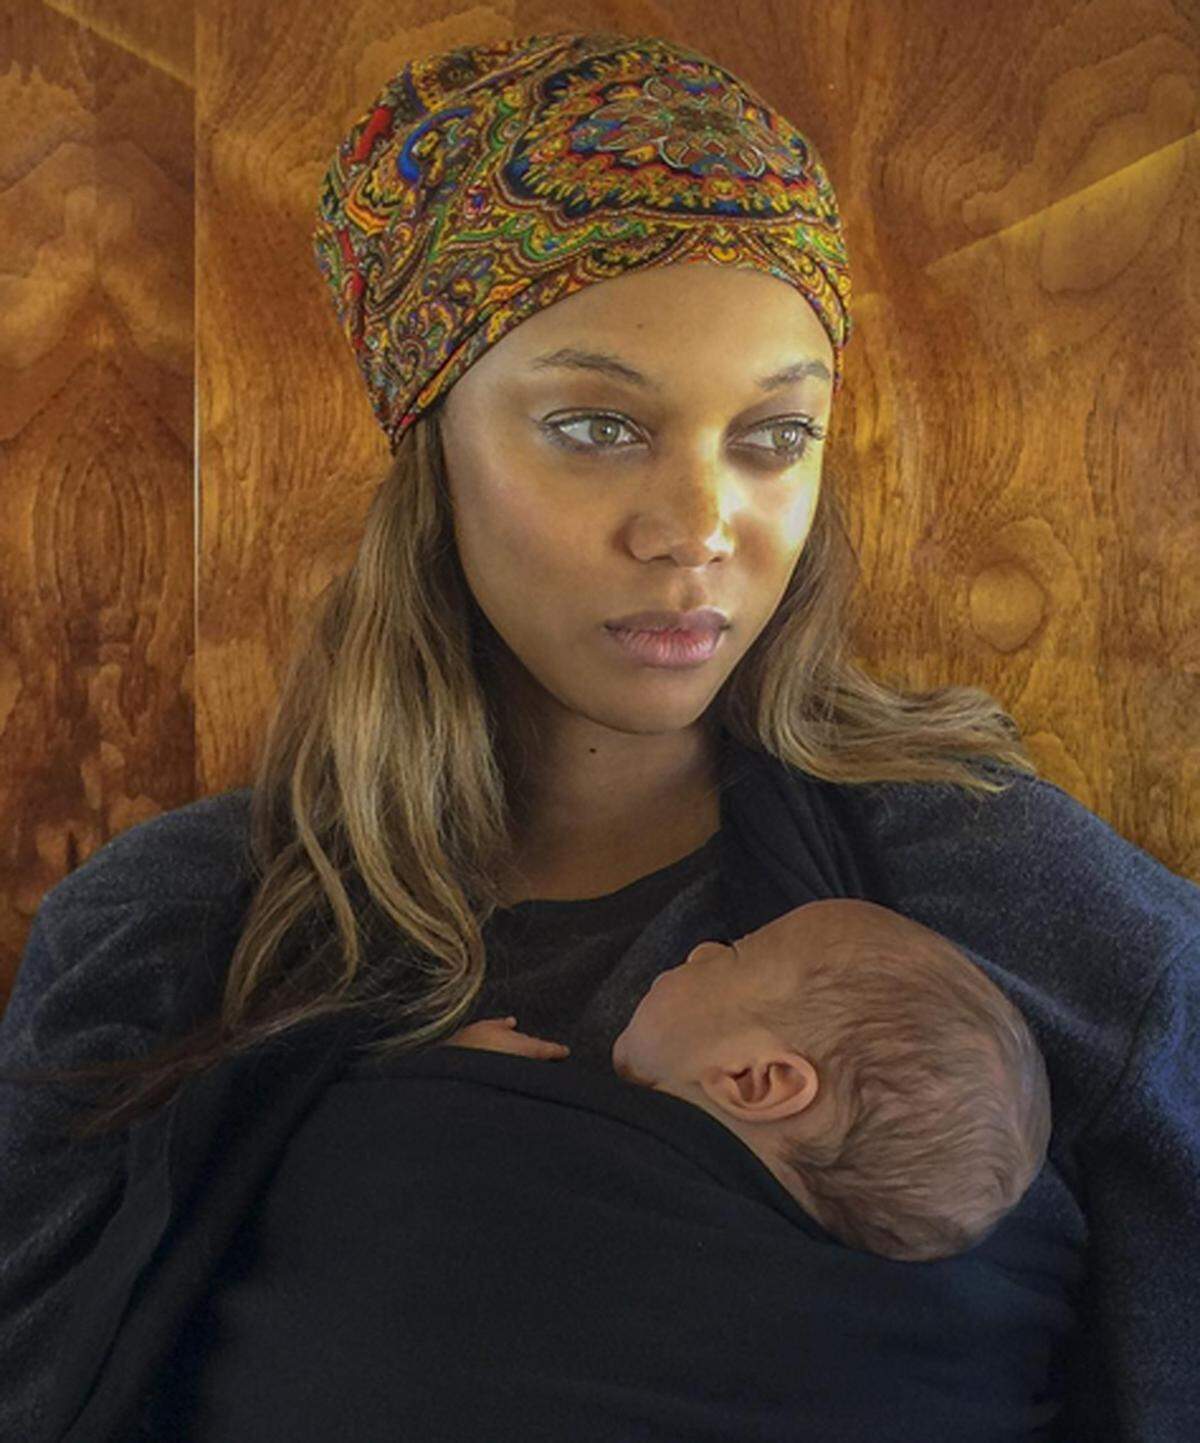 Das erste Foto von Söhnchen York präsentierte Topmodel Tyra Banks auf Instagram. Erst vor zwei Wochen hat die 42-Jährige darüber berichtet, dass eine Leihmutter ihr Baby ausgetragen habe. "Das ist der schönste Valentinstag meines Lebens", titelt sie jetzt.